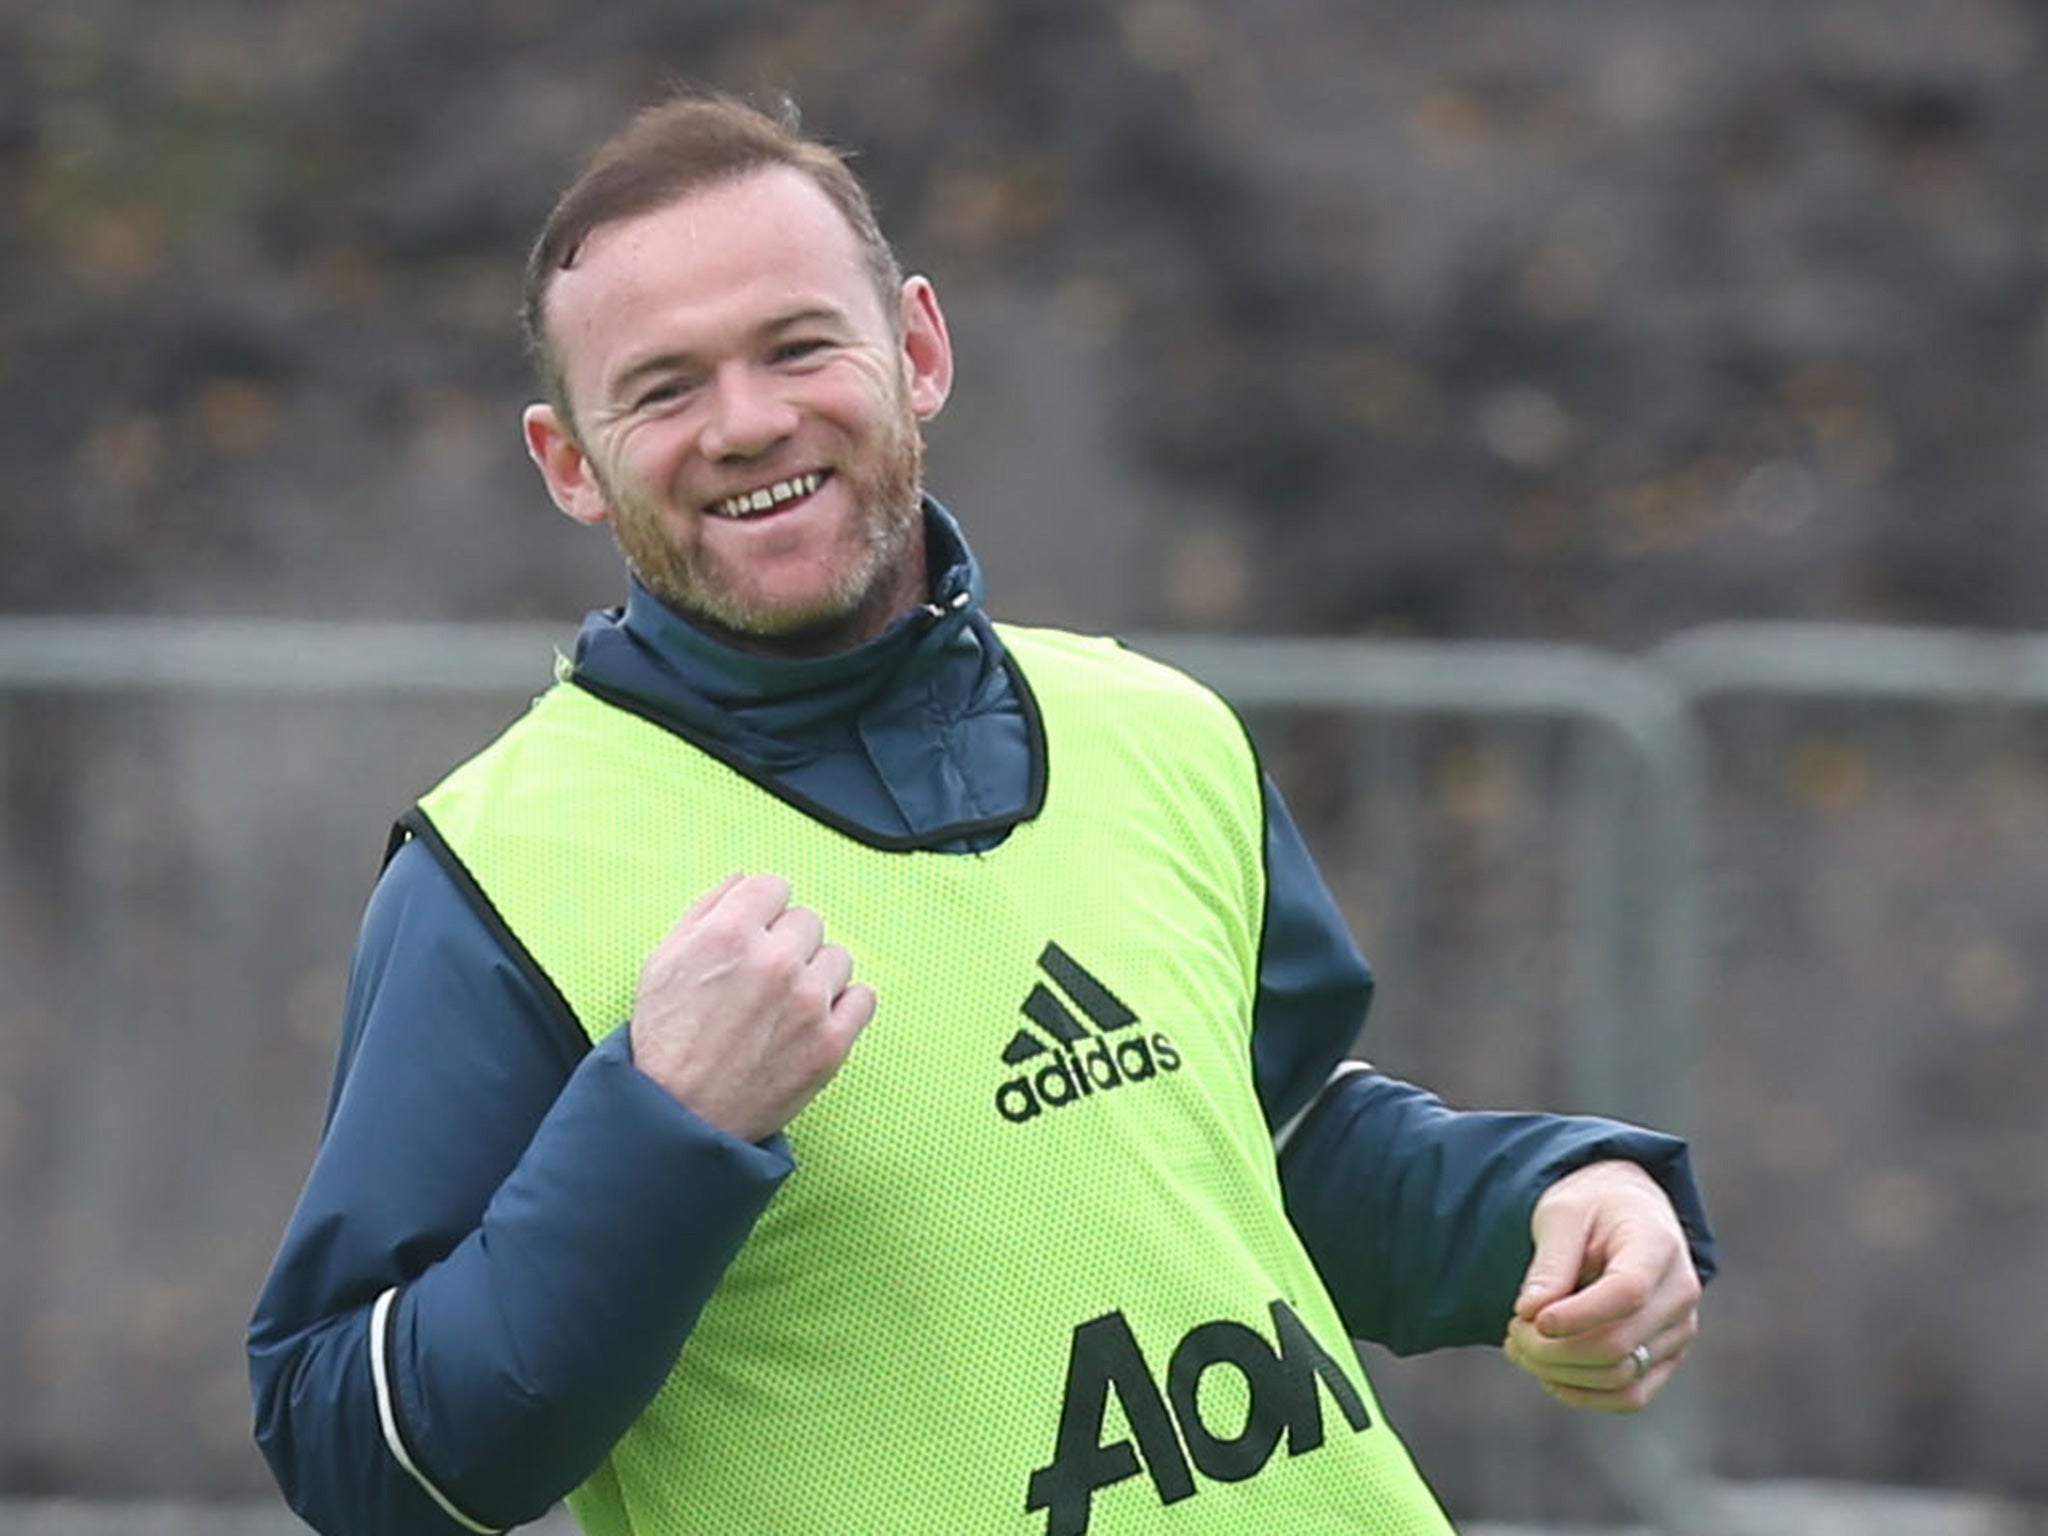 Rooney's off-field behaviour made headlines earlier this week